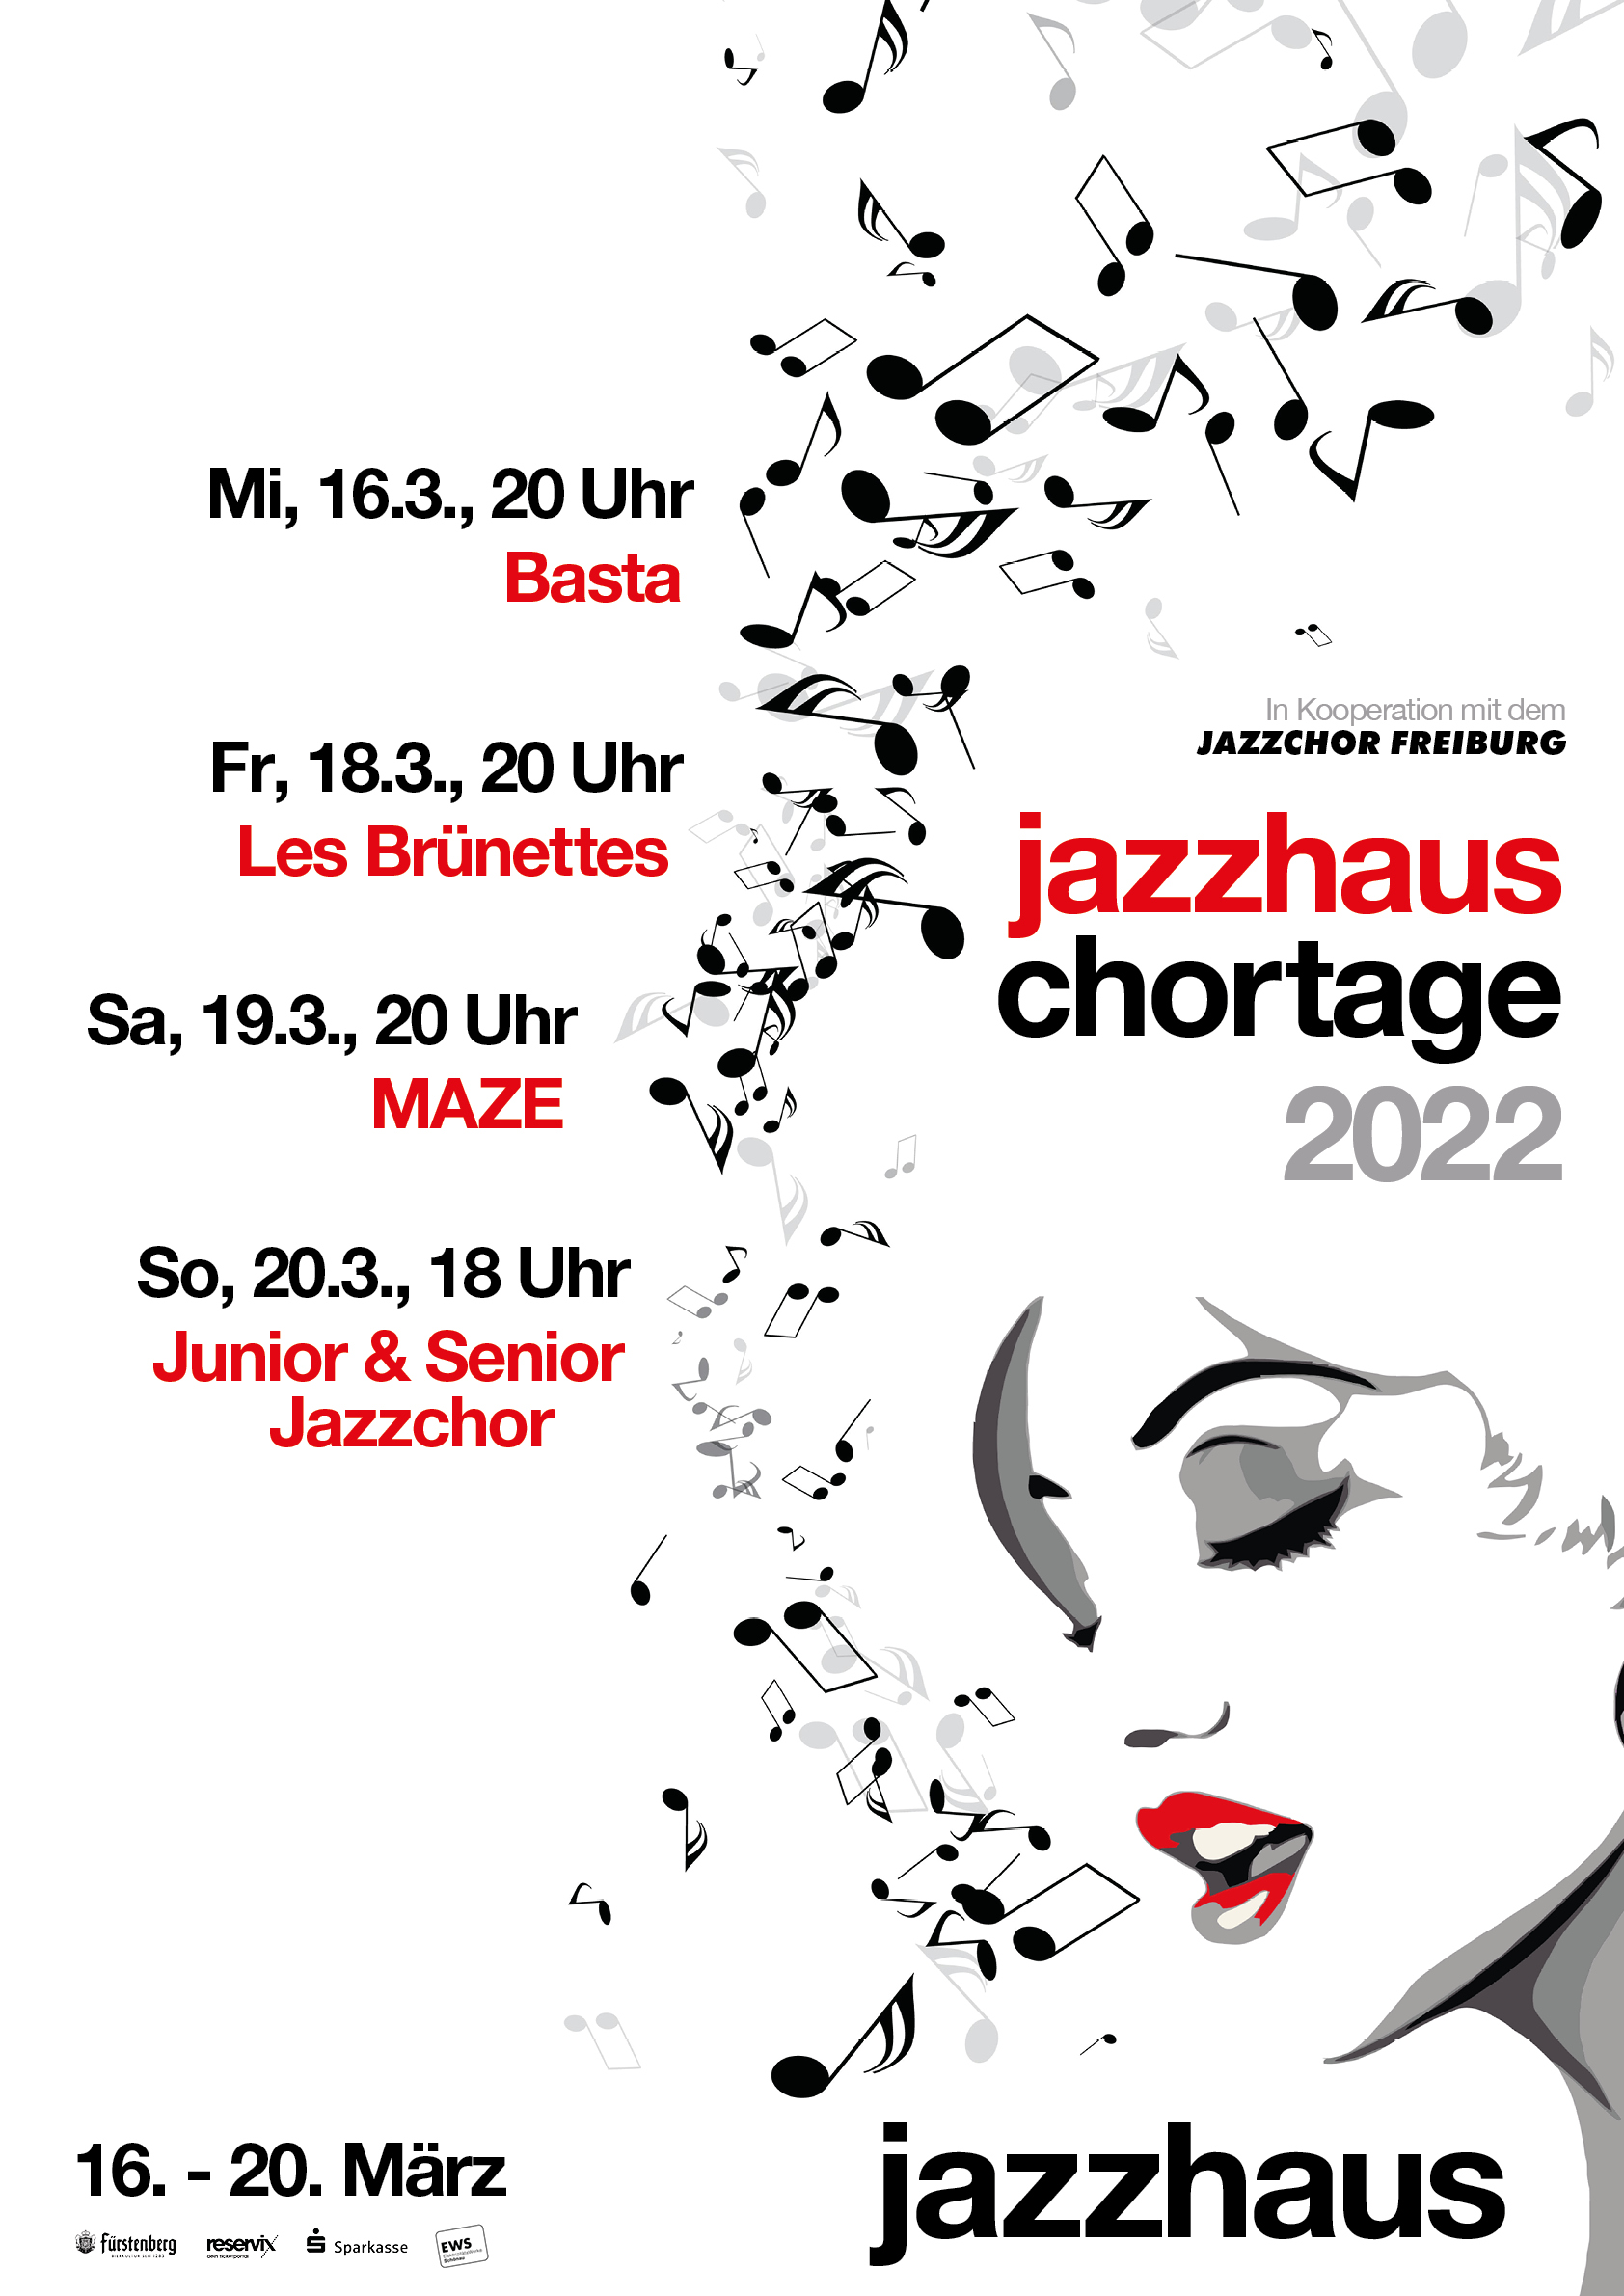 Jazzhaus Chortage